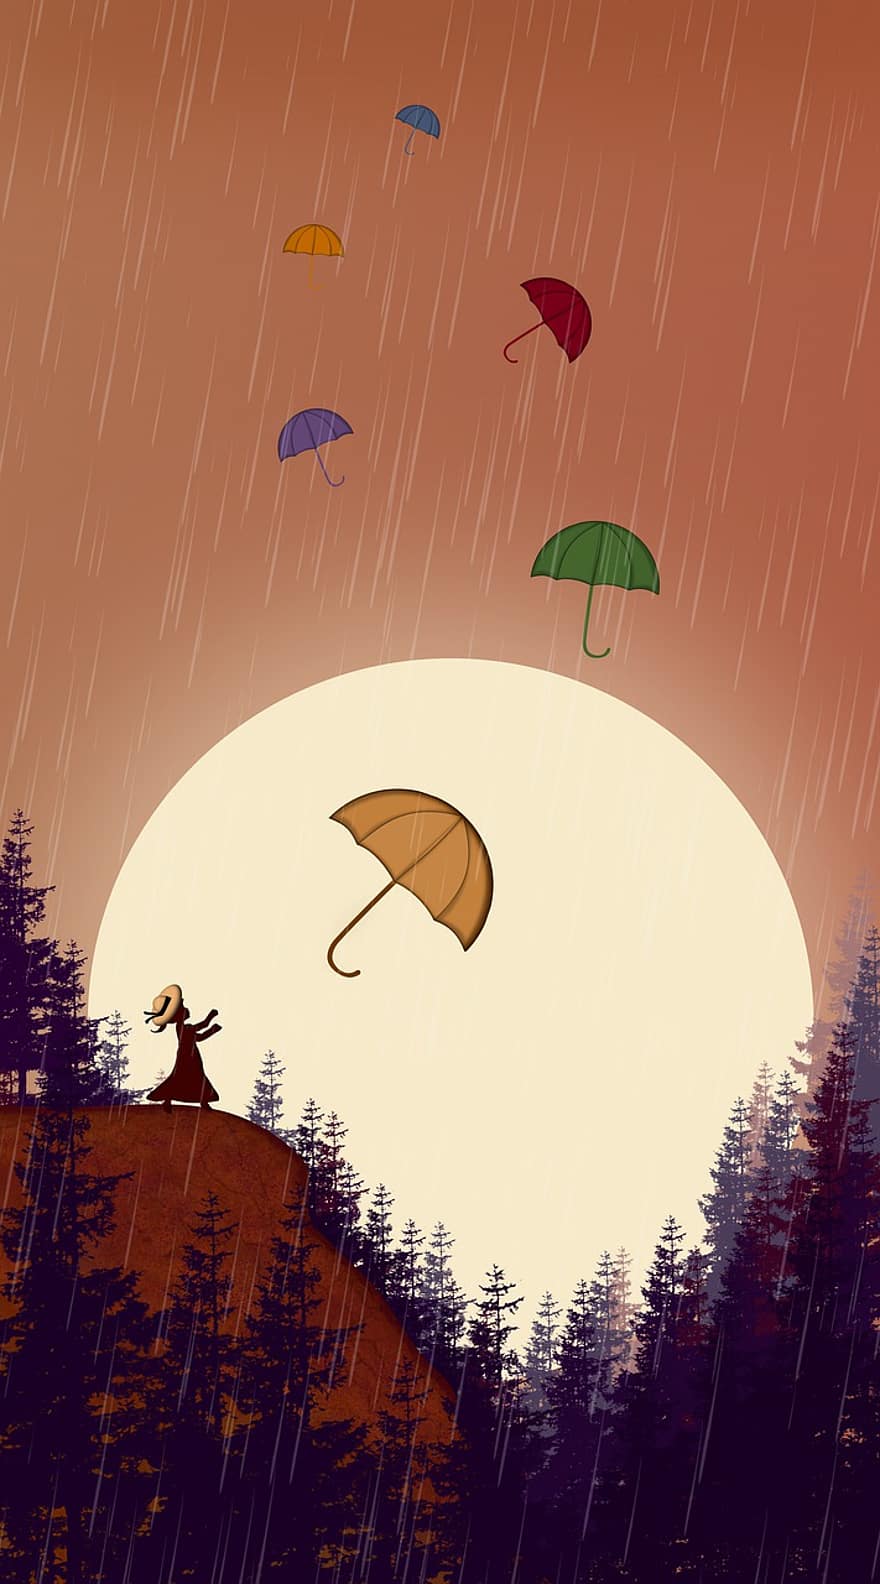 дождь, зонтик, заход солнца, природа, девушка, лес, вектор, осень, дерево, иллюстрация, Погода